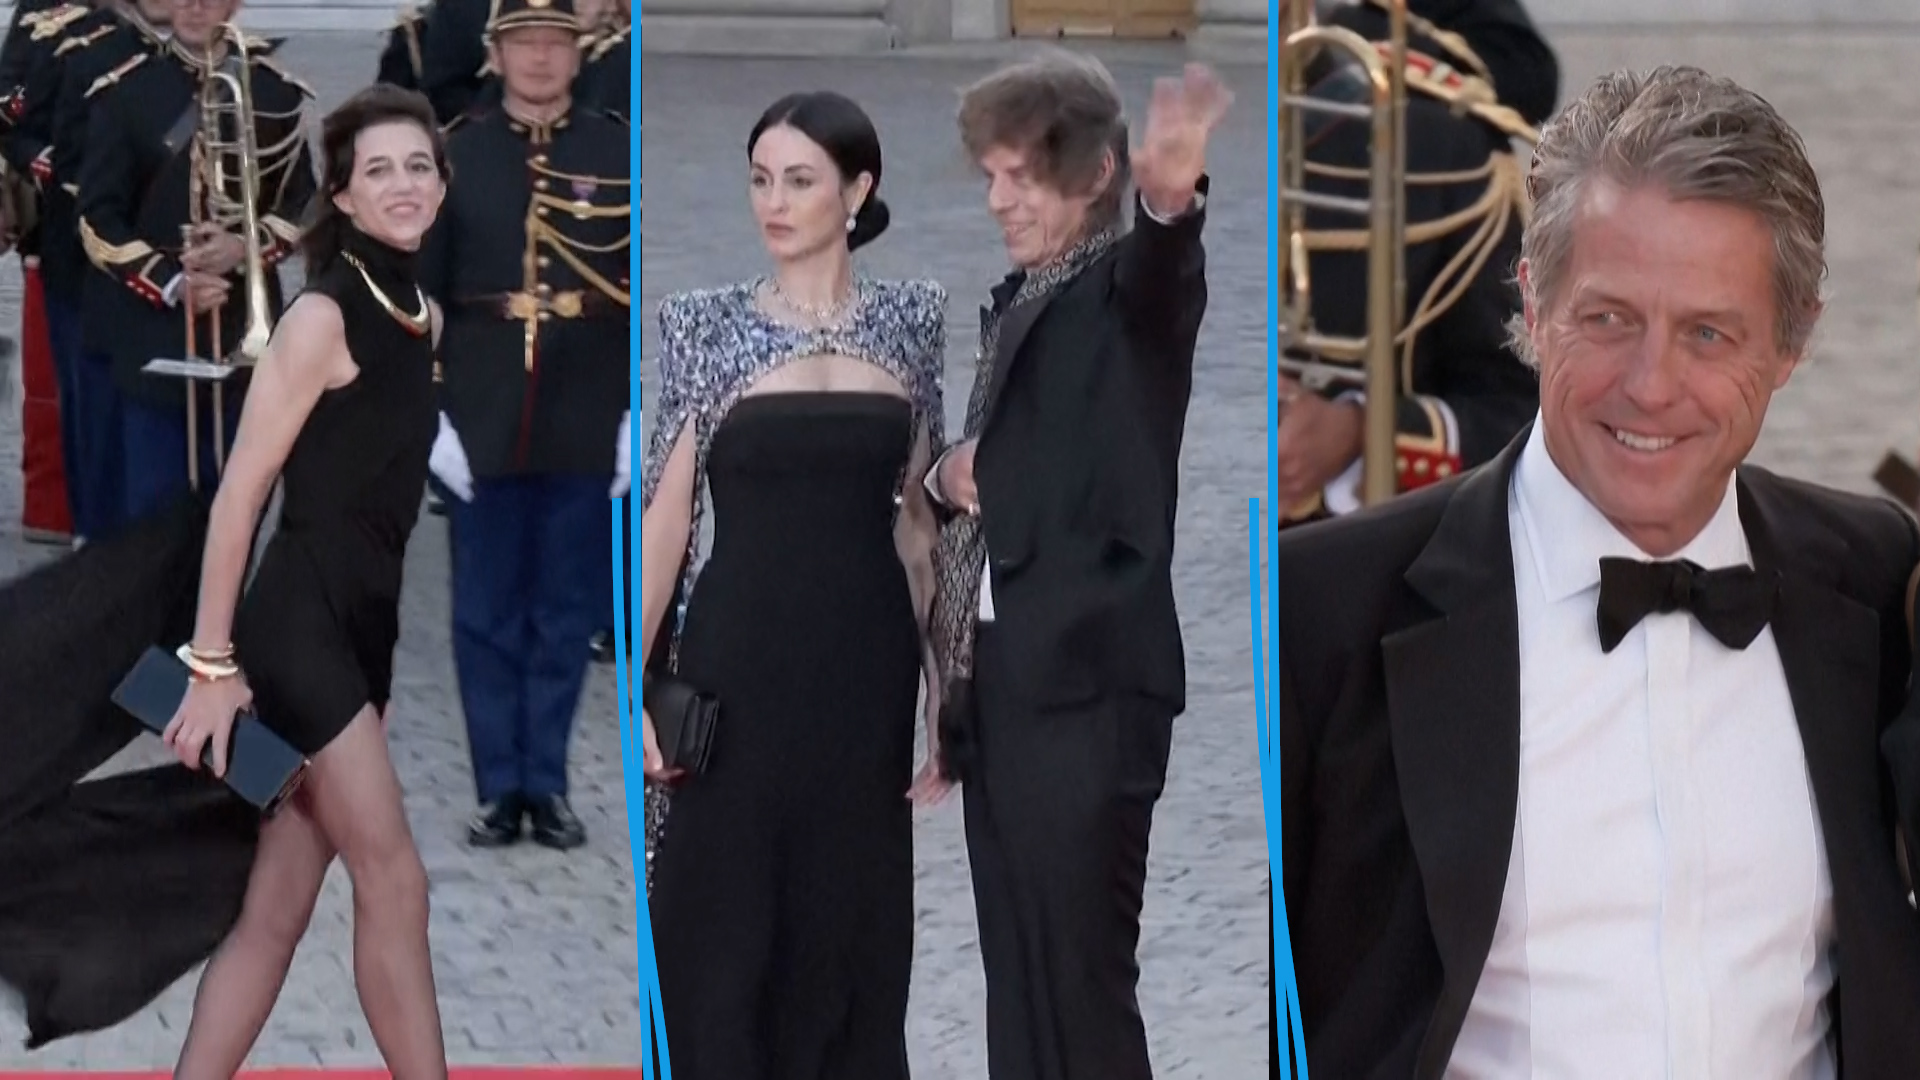 Les actrices Charlotte Gainsbourg et Carole Bouquet, le musicien Mick Jagger ou encore l'acteur Hugh Grant sont arrivés au château de Versailles pour le dîner d'Etat en l'honneur du roi Charles III.